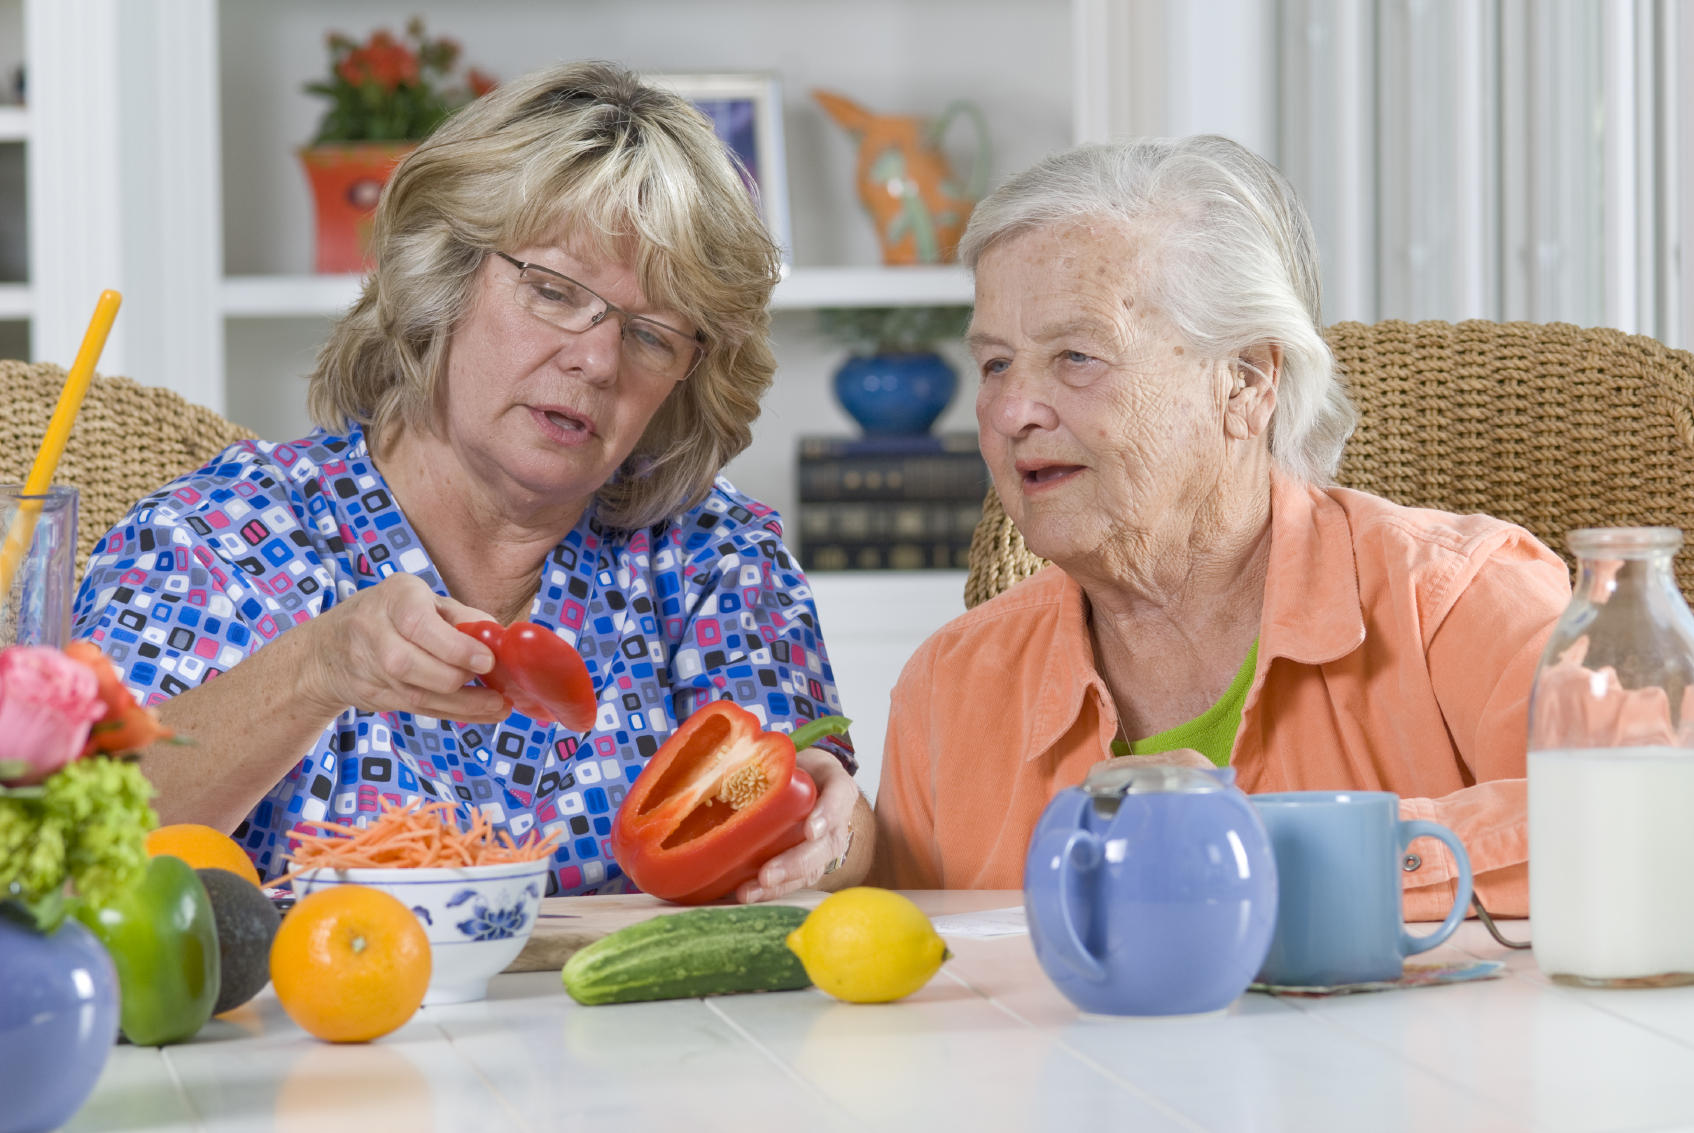 Питания лиц пожилого возраста. Здоровое питание для пожилых. Питание пожилого человека. Правильное питание для пожилых людей. Питание людей пожилого возраста.